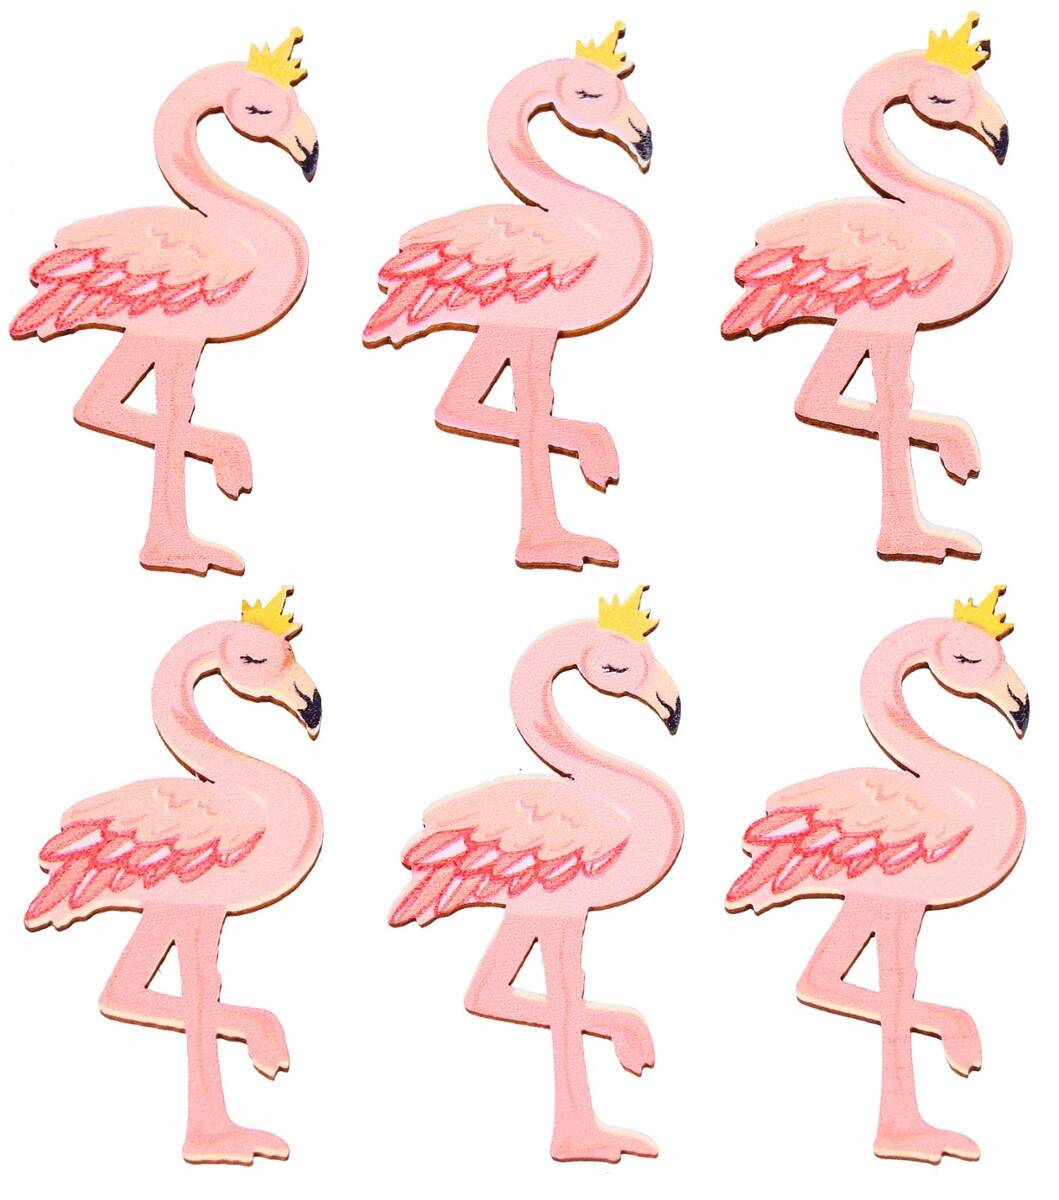 Flamingi rózowe na przylepcu (Zdjęcie 1)